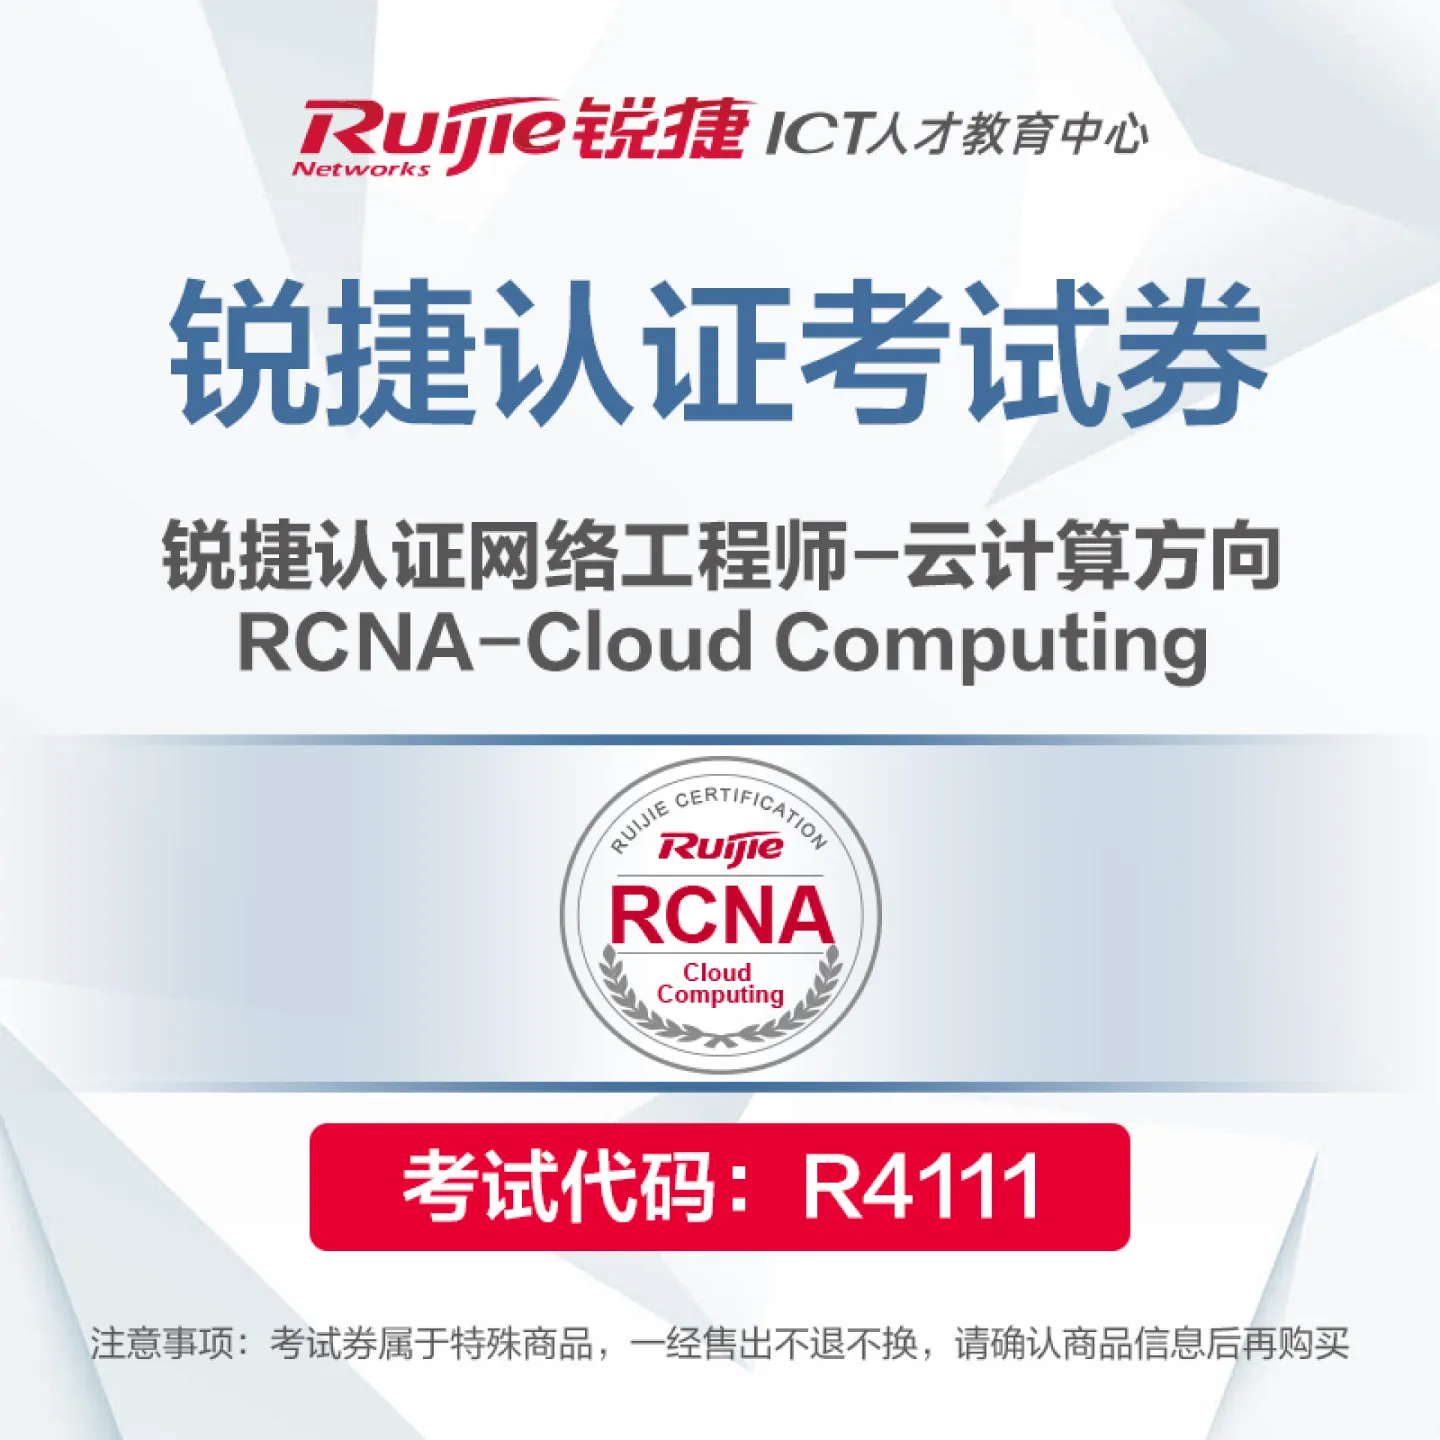 ����璇��搞��RCNA-Cloud Computing